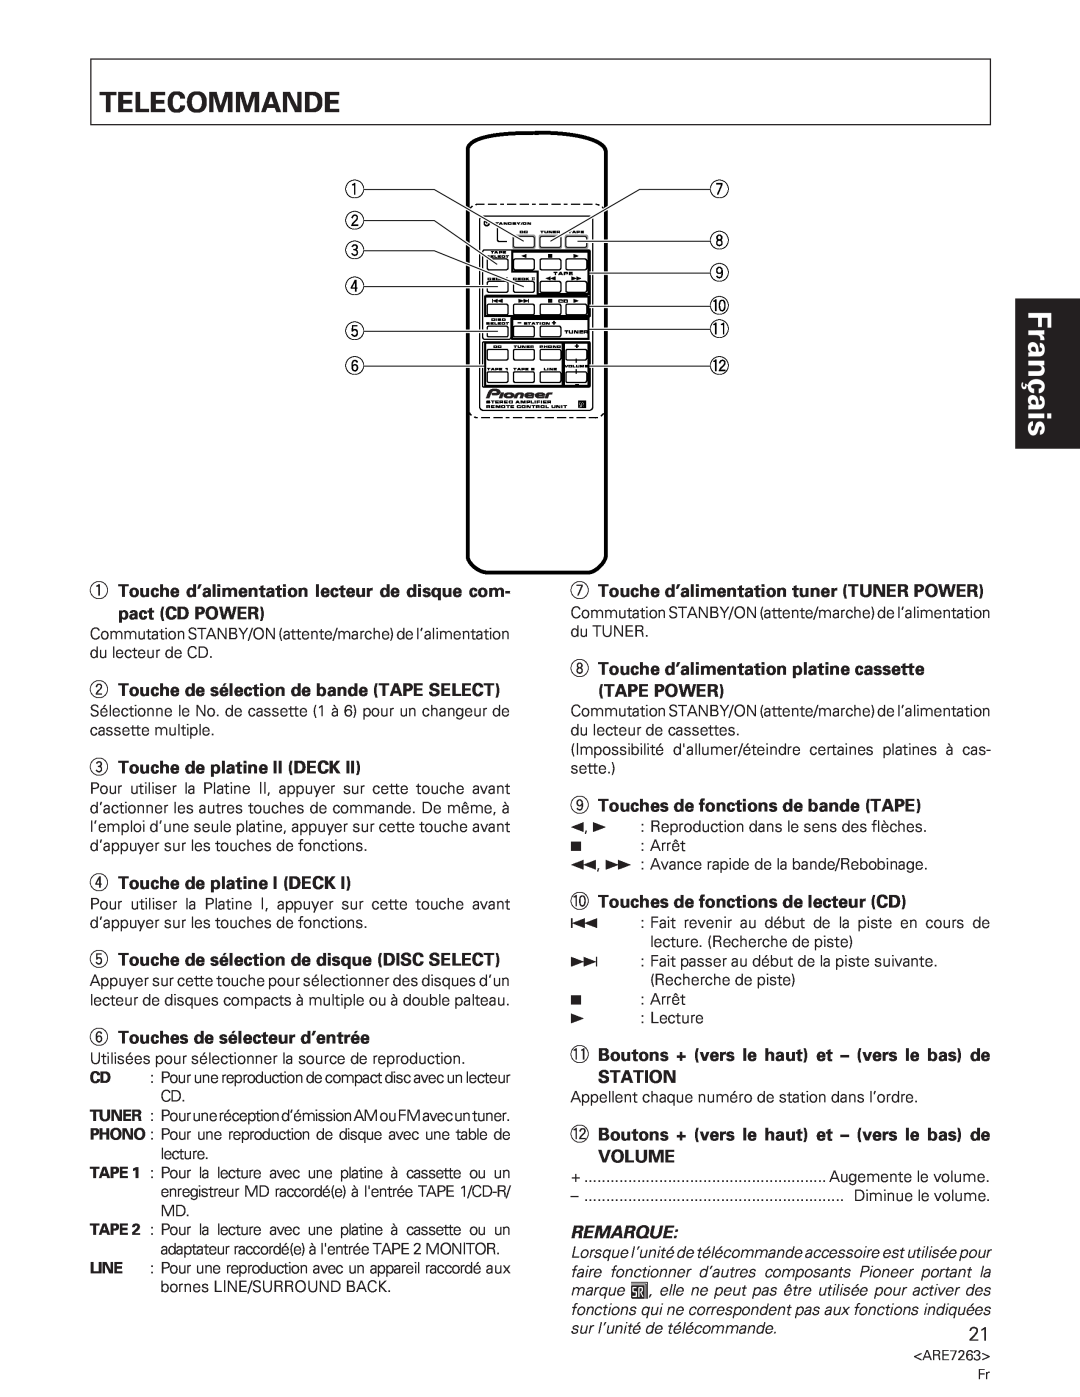 Pioneer A-35R Telecommande, 1Touche d’alimentation lecteur de disque com, pact CD POWER, 3Touche de platine II DECK 